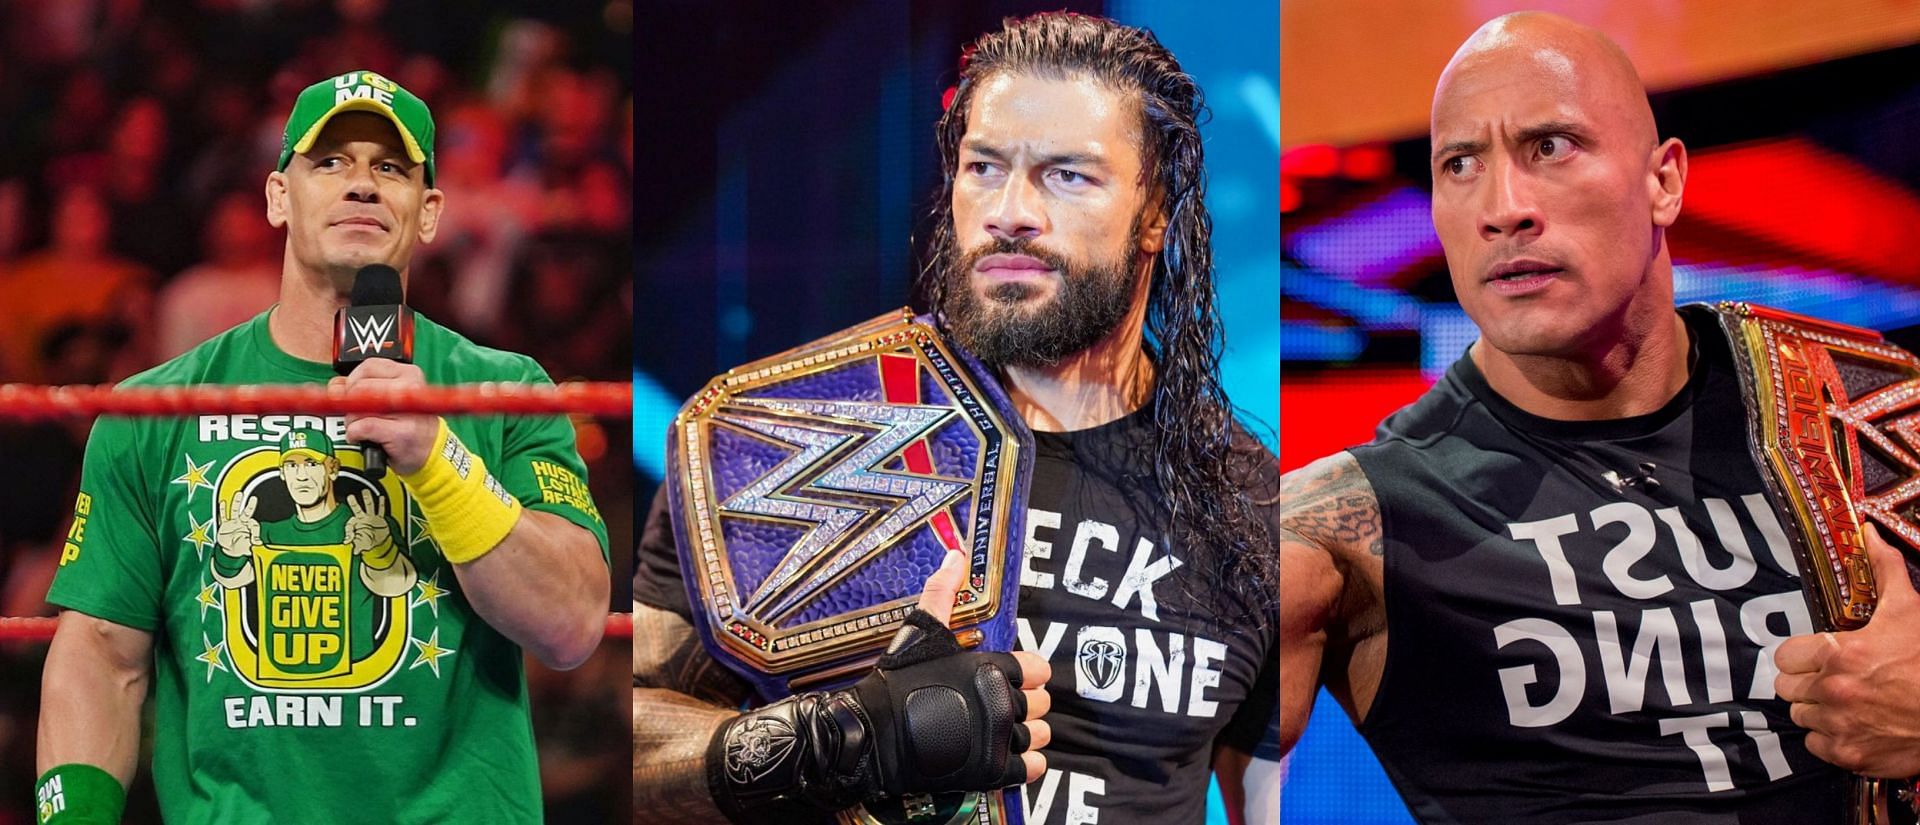 WWE दिग्गज ने रॉक और रोमन के ड्रीम मैच को लेकर दी प्रतिक्रिया 